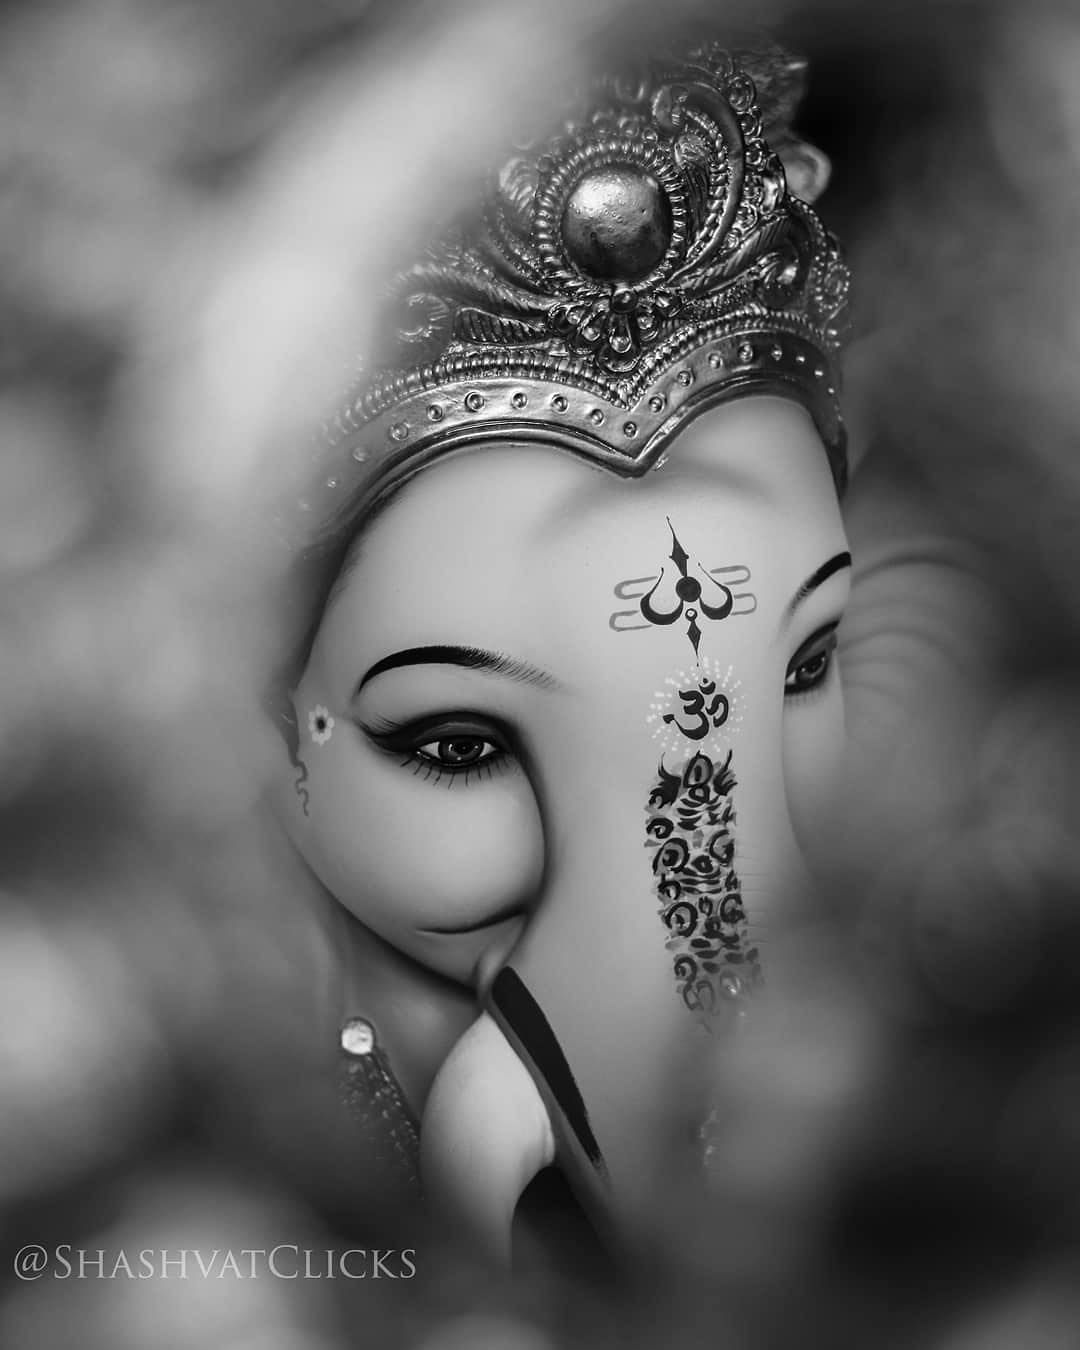 Free Lord Ganesha Vector Image